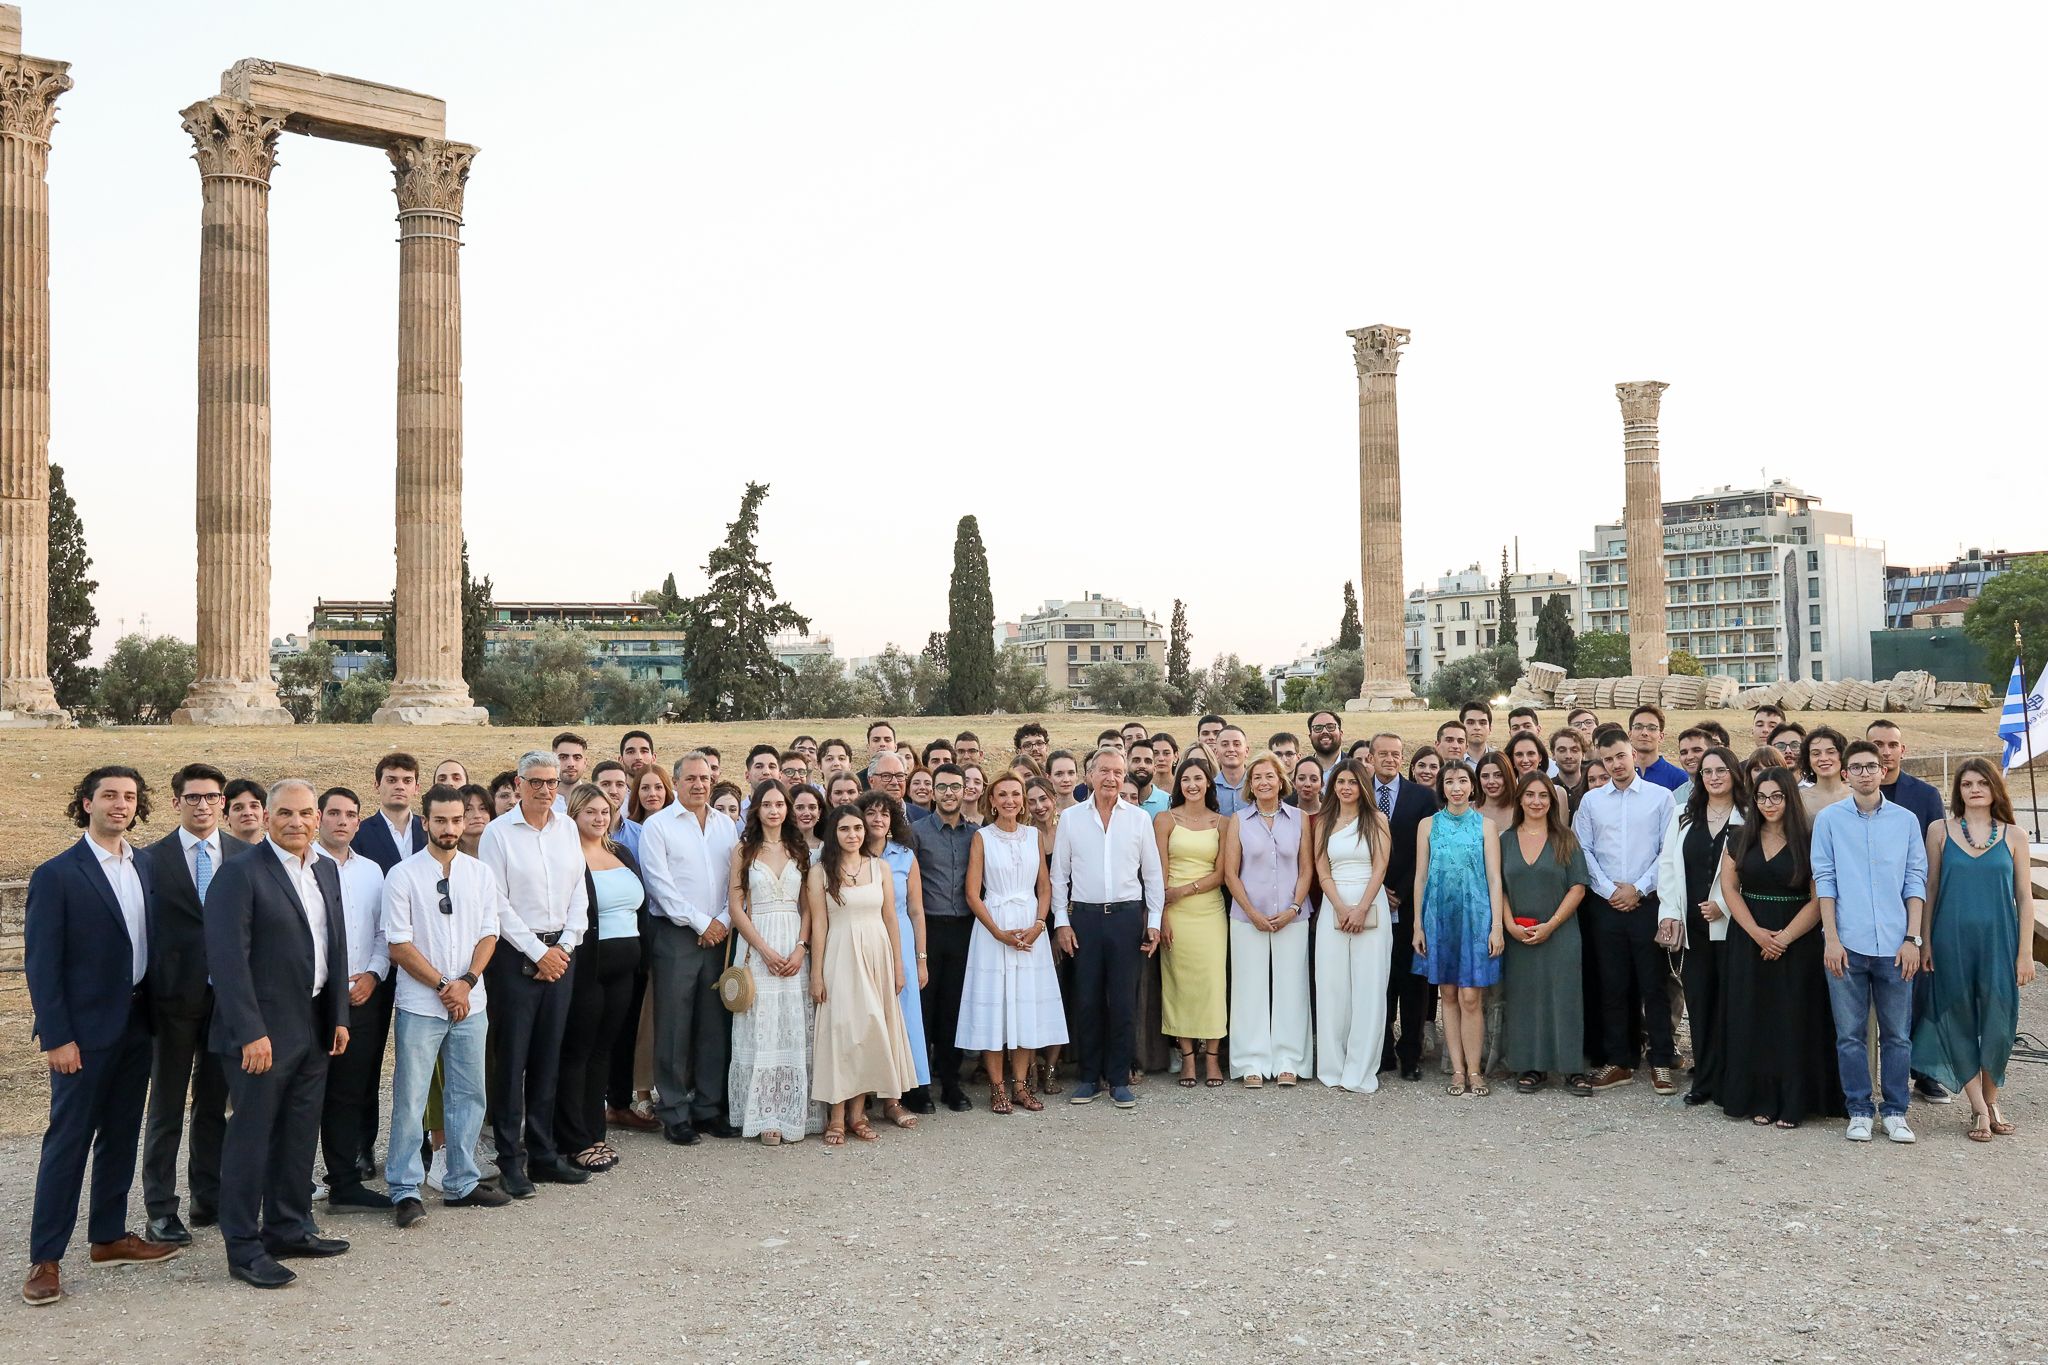  Οι υπότροφοι της Ένωσης Ελλήνων Εφοπλιστών στο Ολυμπιείο, μαζί με την Πρόεδρο της Ένωσης Ελλήνων Εφοπλιστών, Μελίνα Τραυλού και μέλη του ΔΣ.